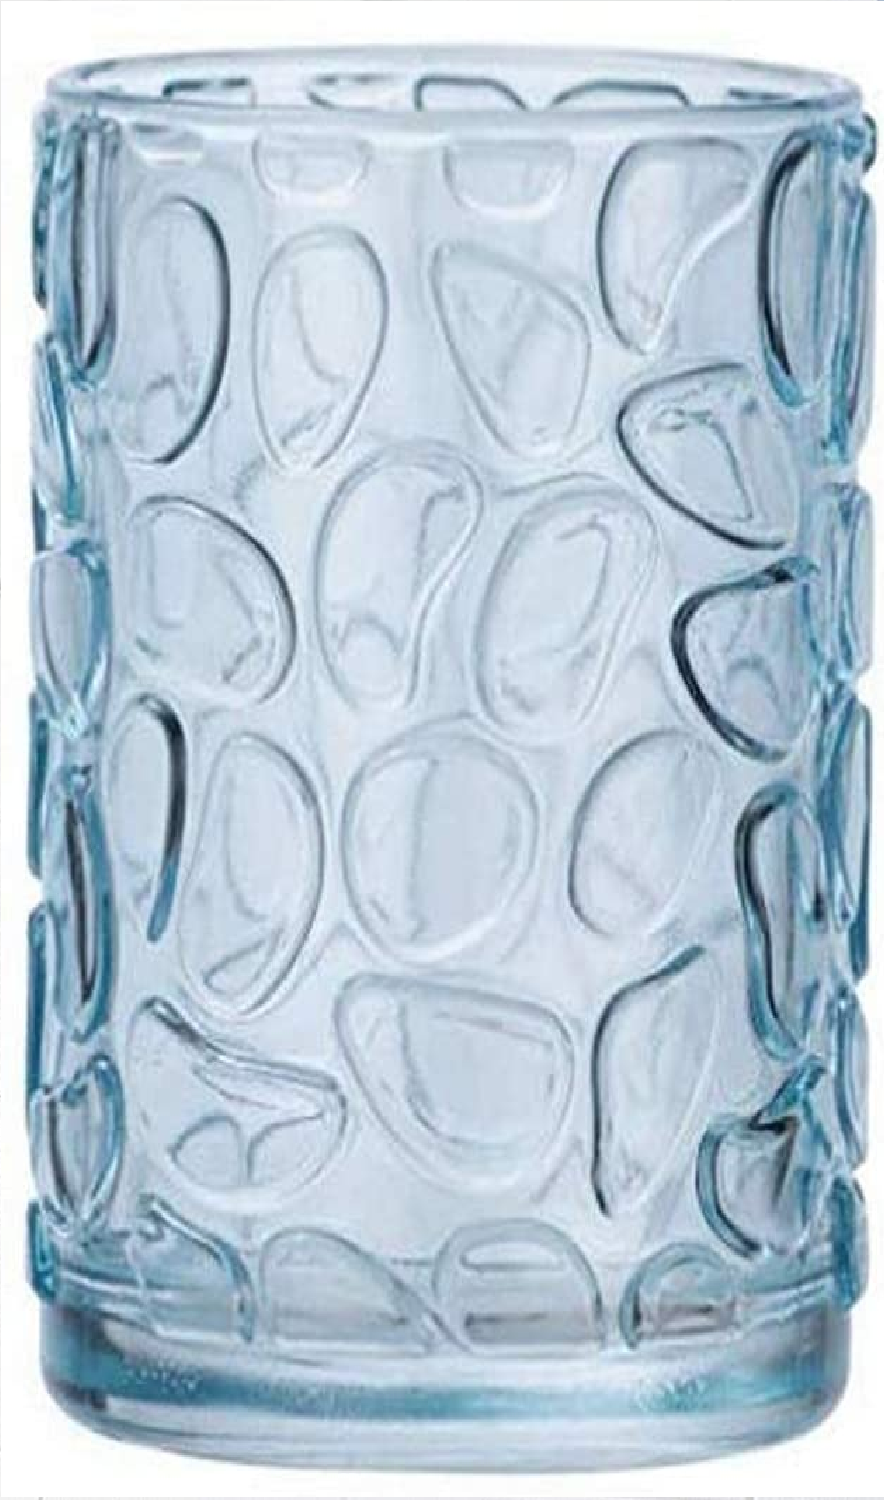 Zahnputzbecher Vetro Blau rund Echtglas - Zahnbürstenhalter für Zahnbürste und Zahnpasta, Glas, 7.5 x 10 x 7.5 cm, Blau